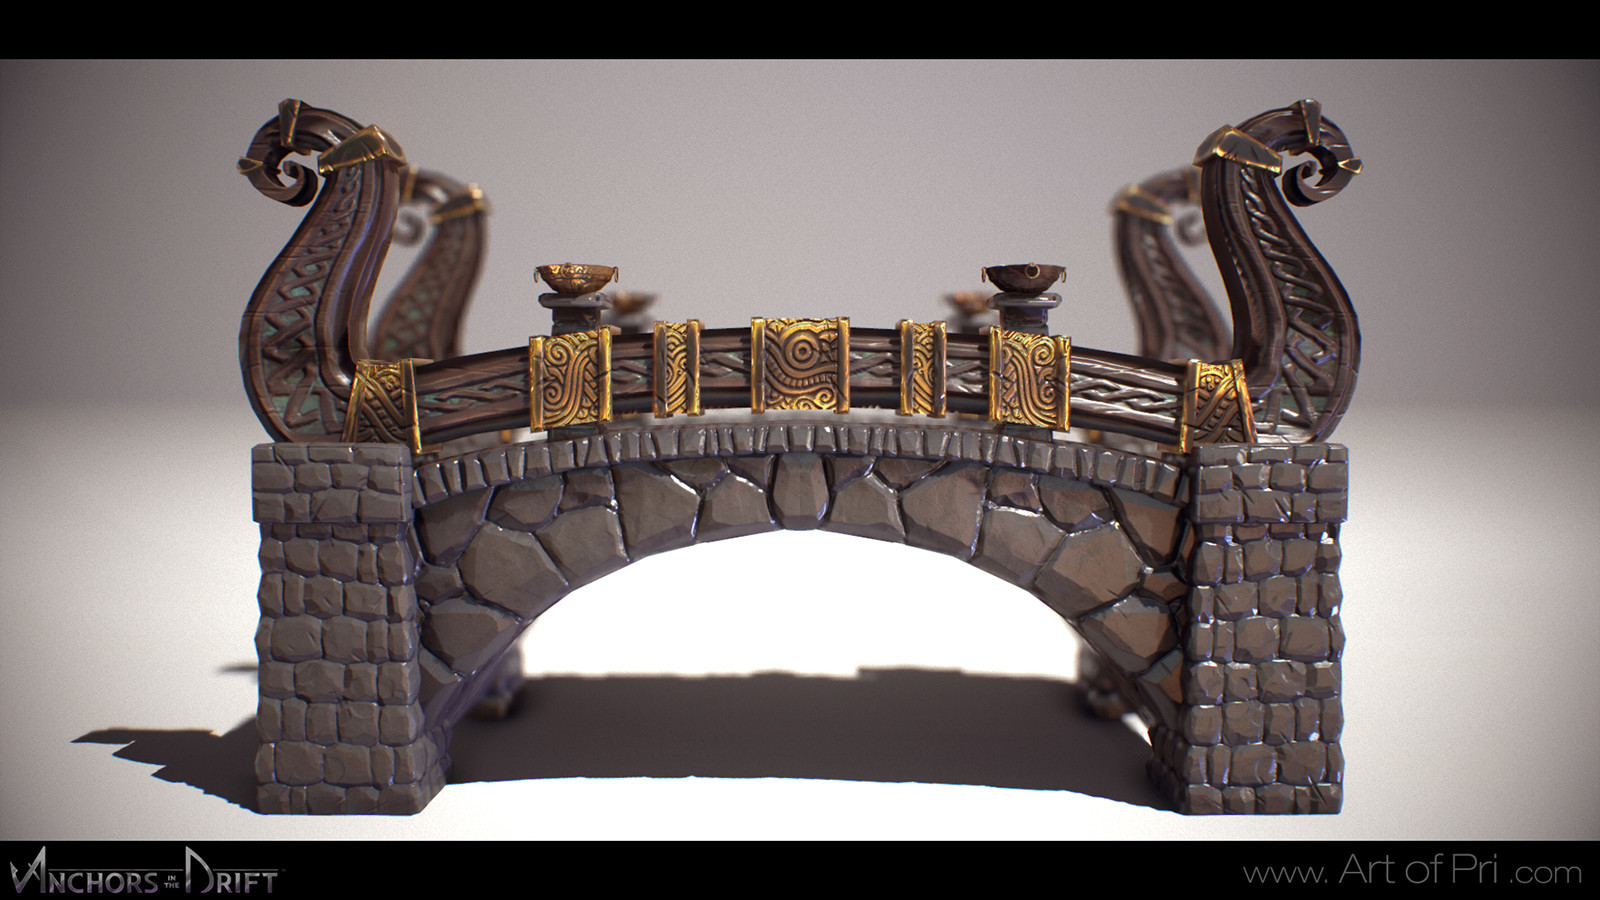 Viking Bridge. 
Concept by Nick Southam
Model by Me.